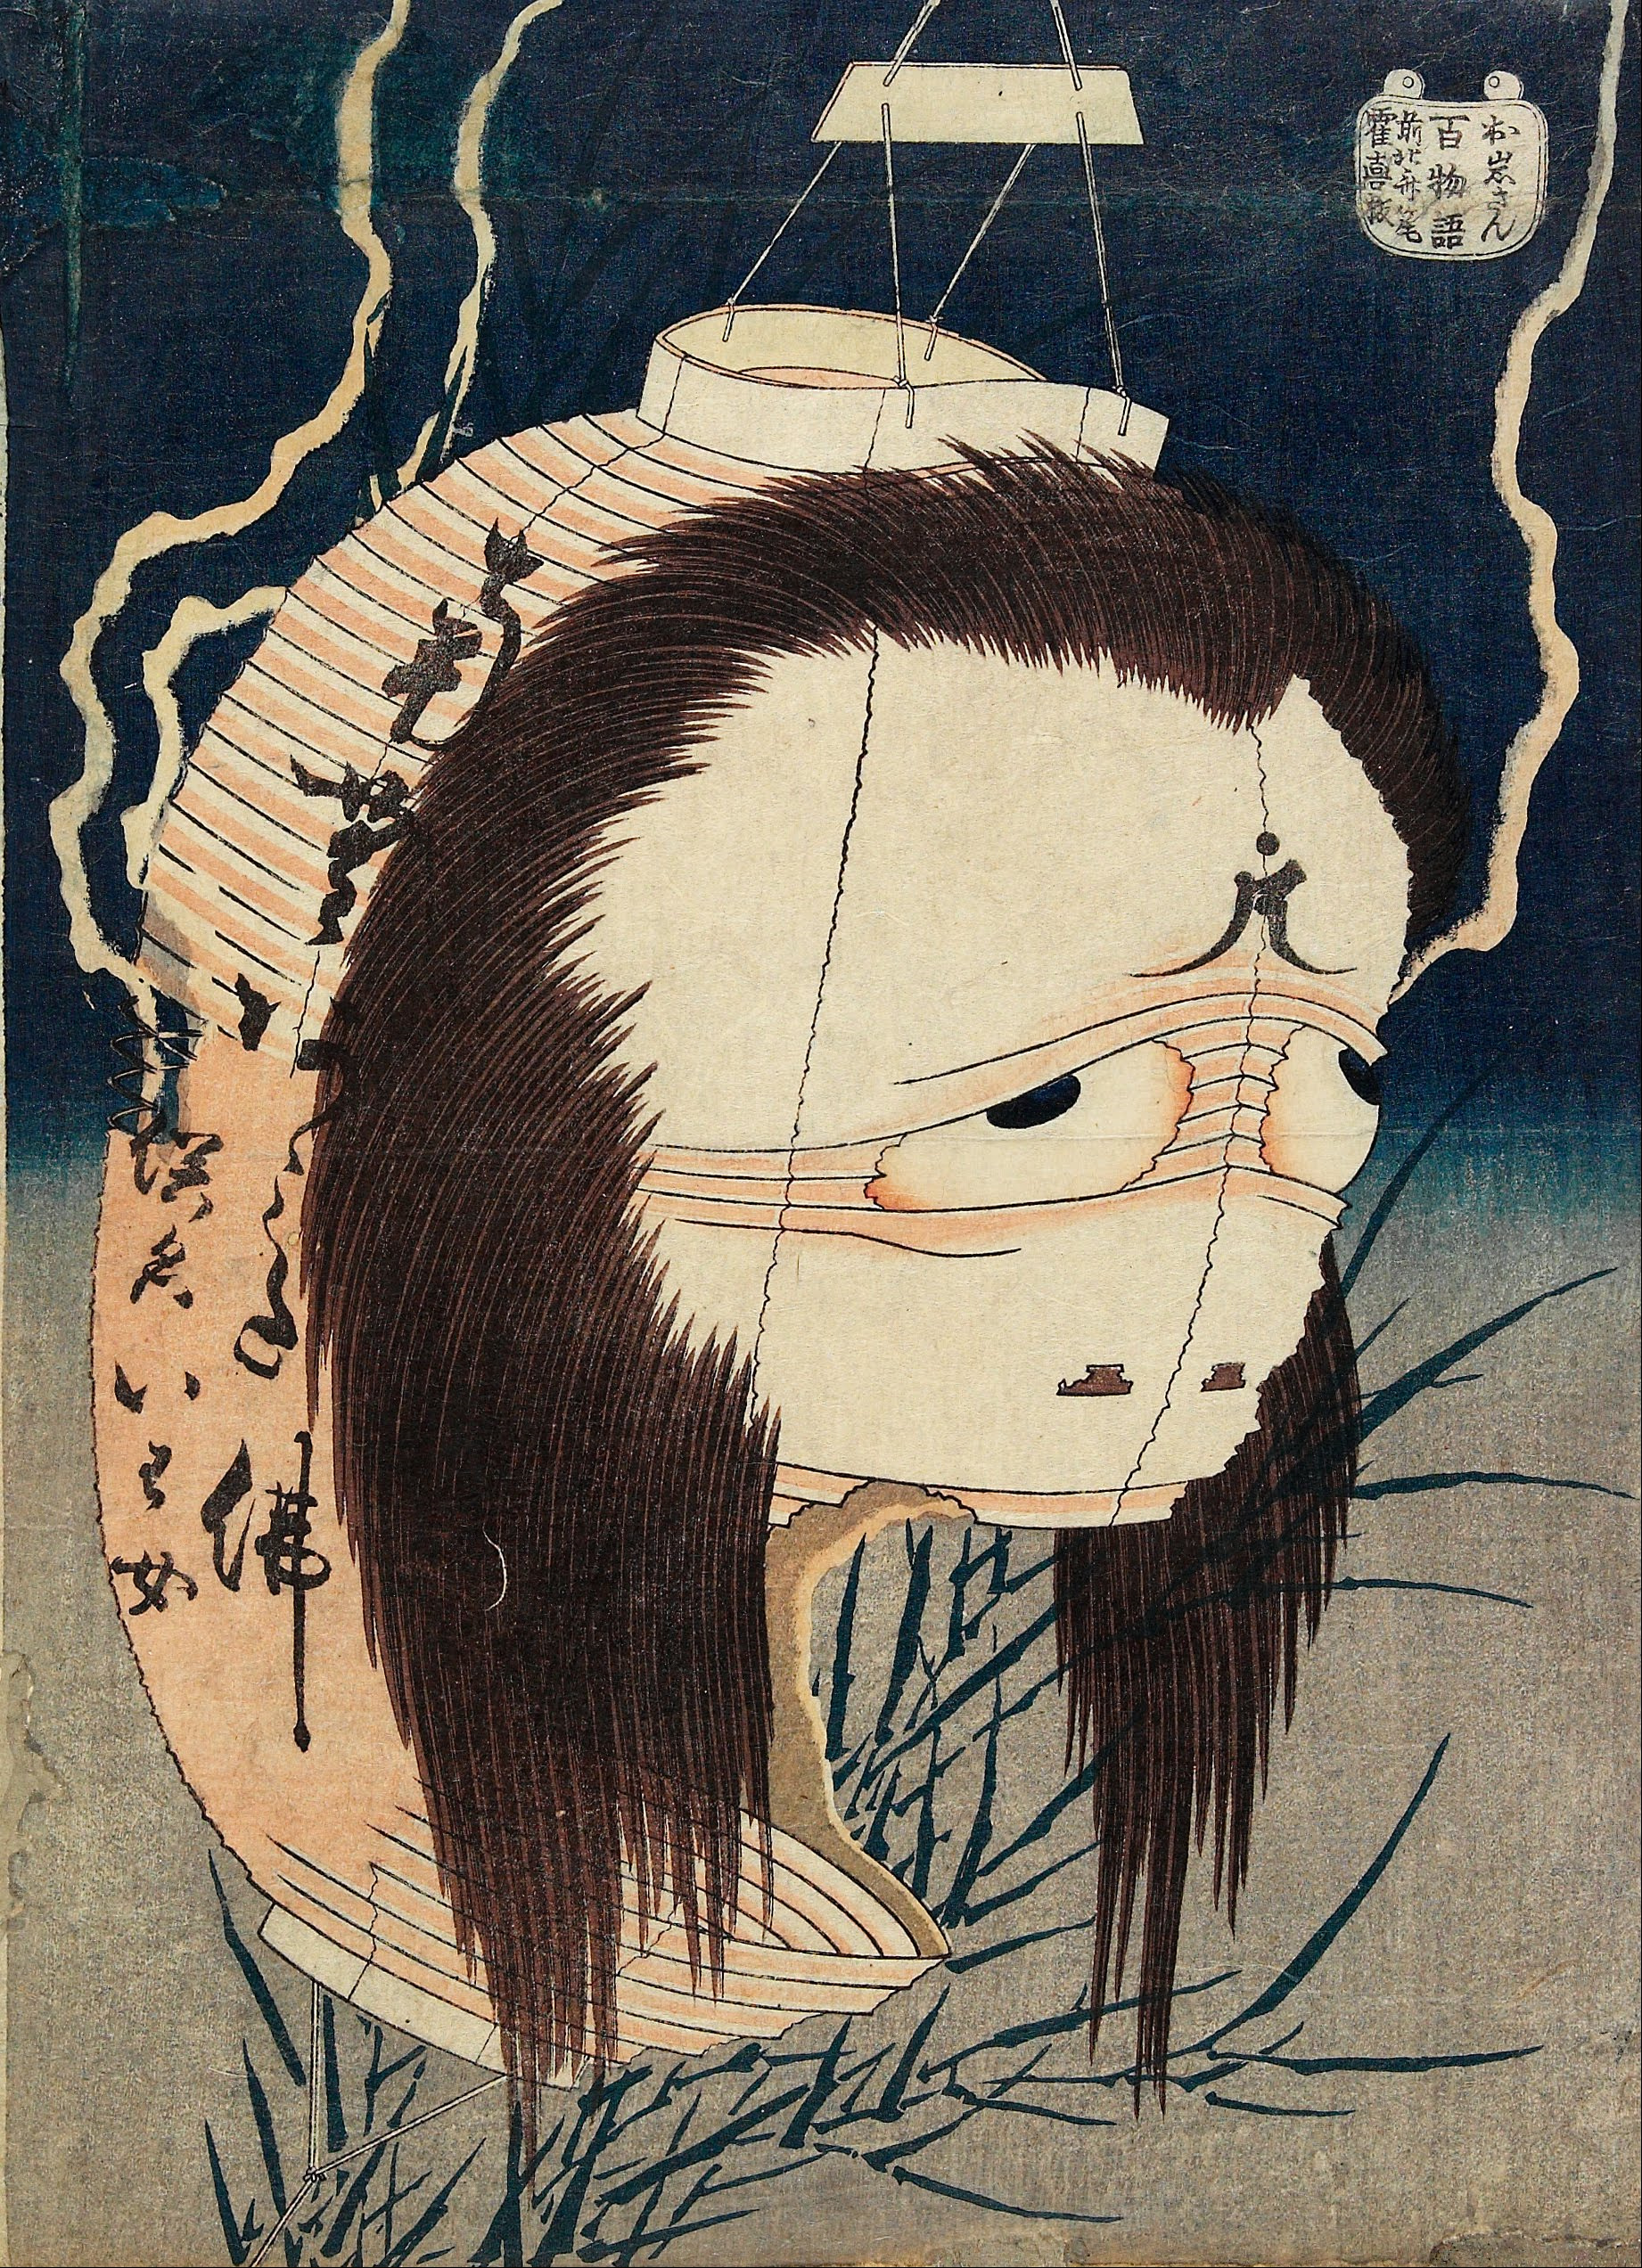 提燈冤魂，阿岩 by Katsushika Hokusai - 西元1831-1832 - 10 3/8 x 7 7/16 英吋 